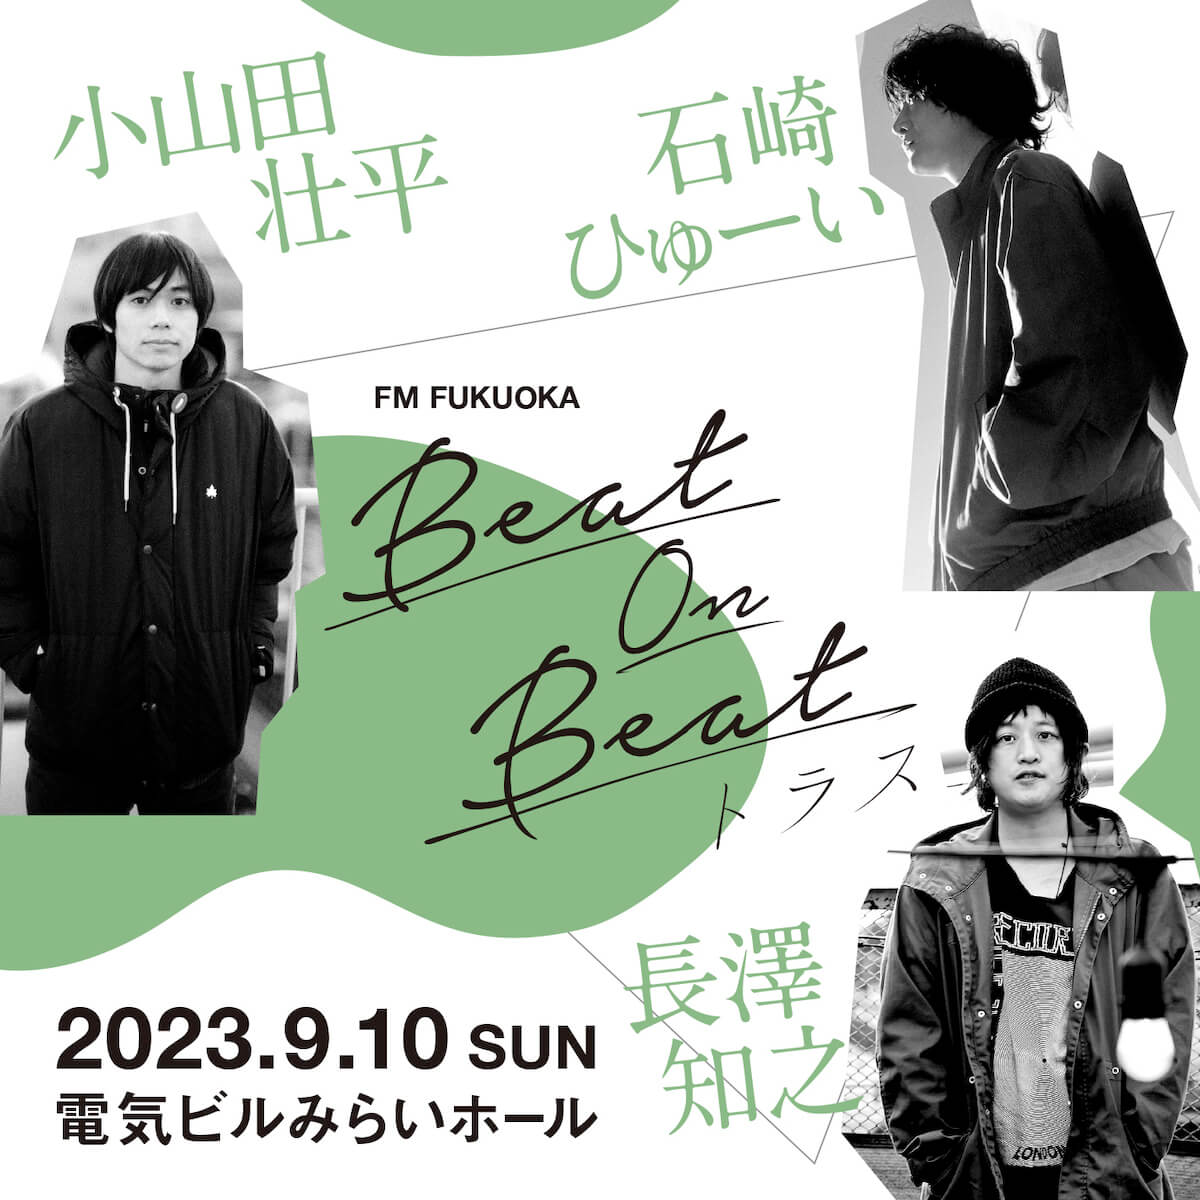 「Beat On Beat 〜トラス〜」が復活!!